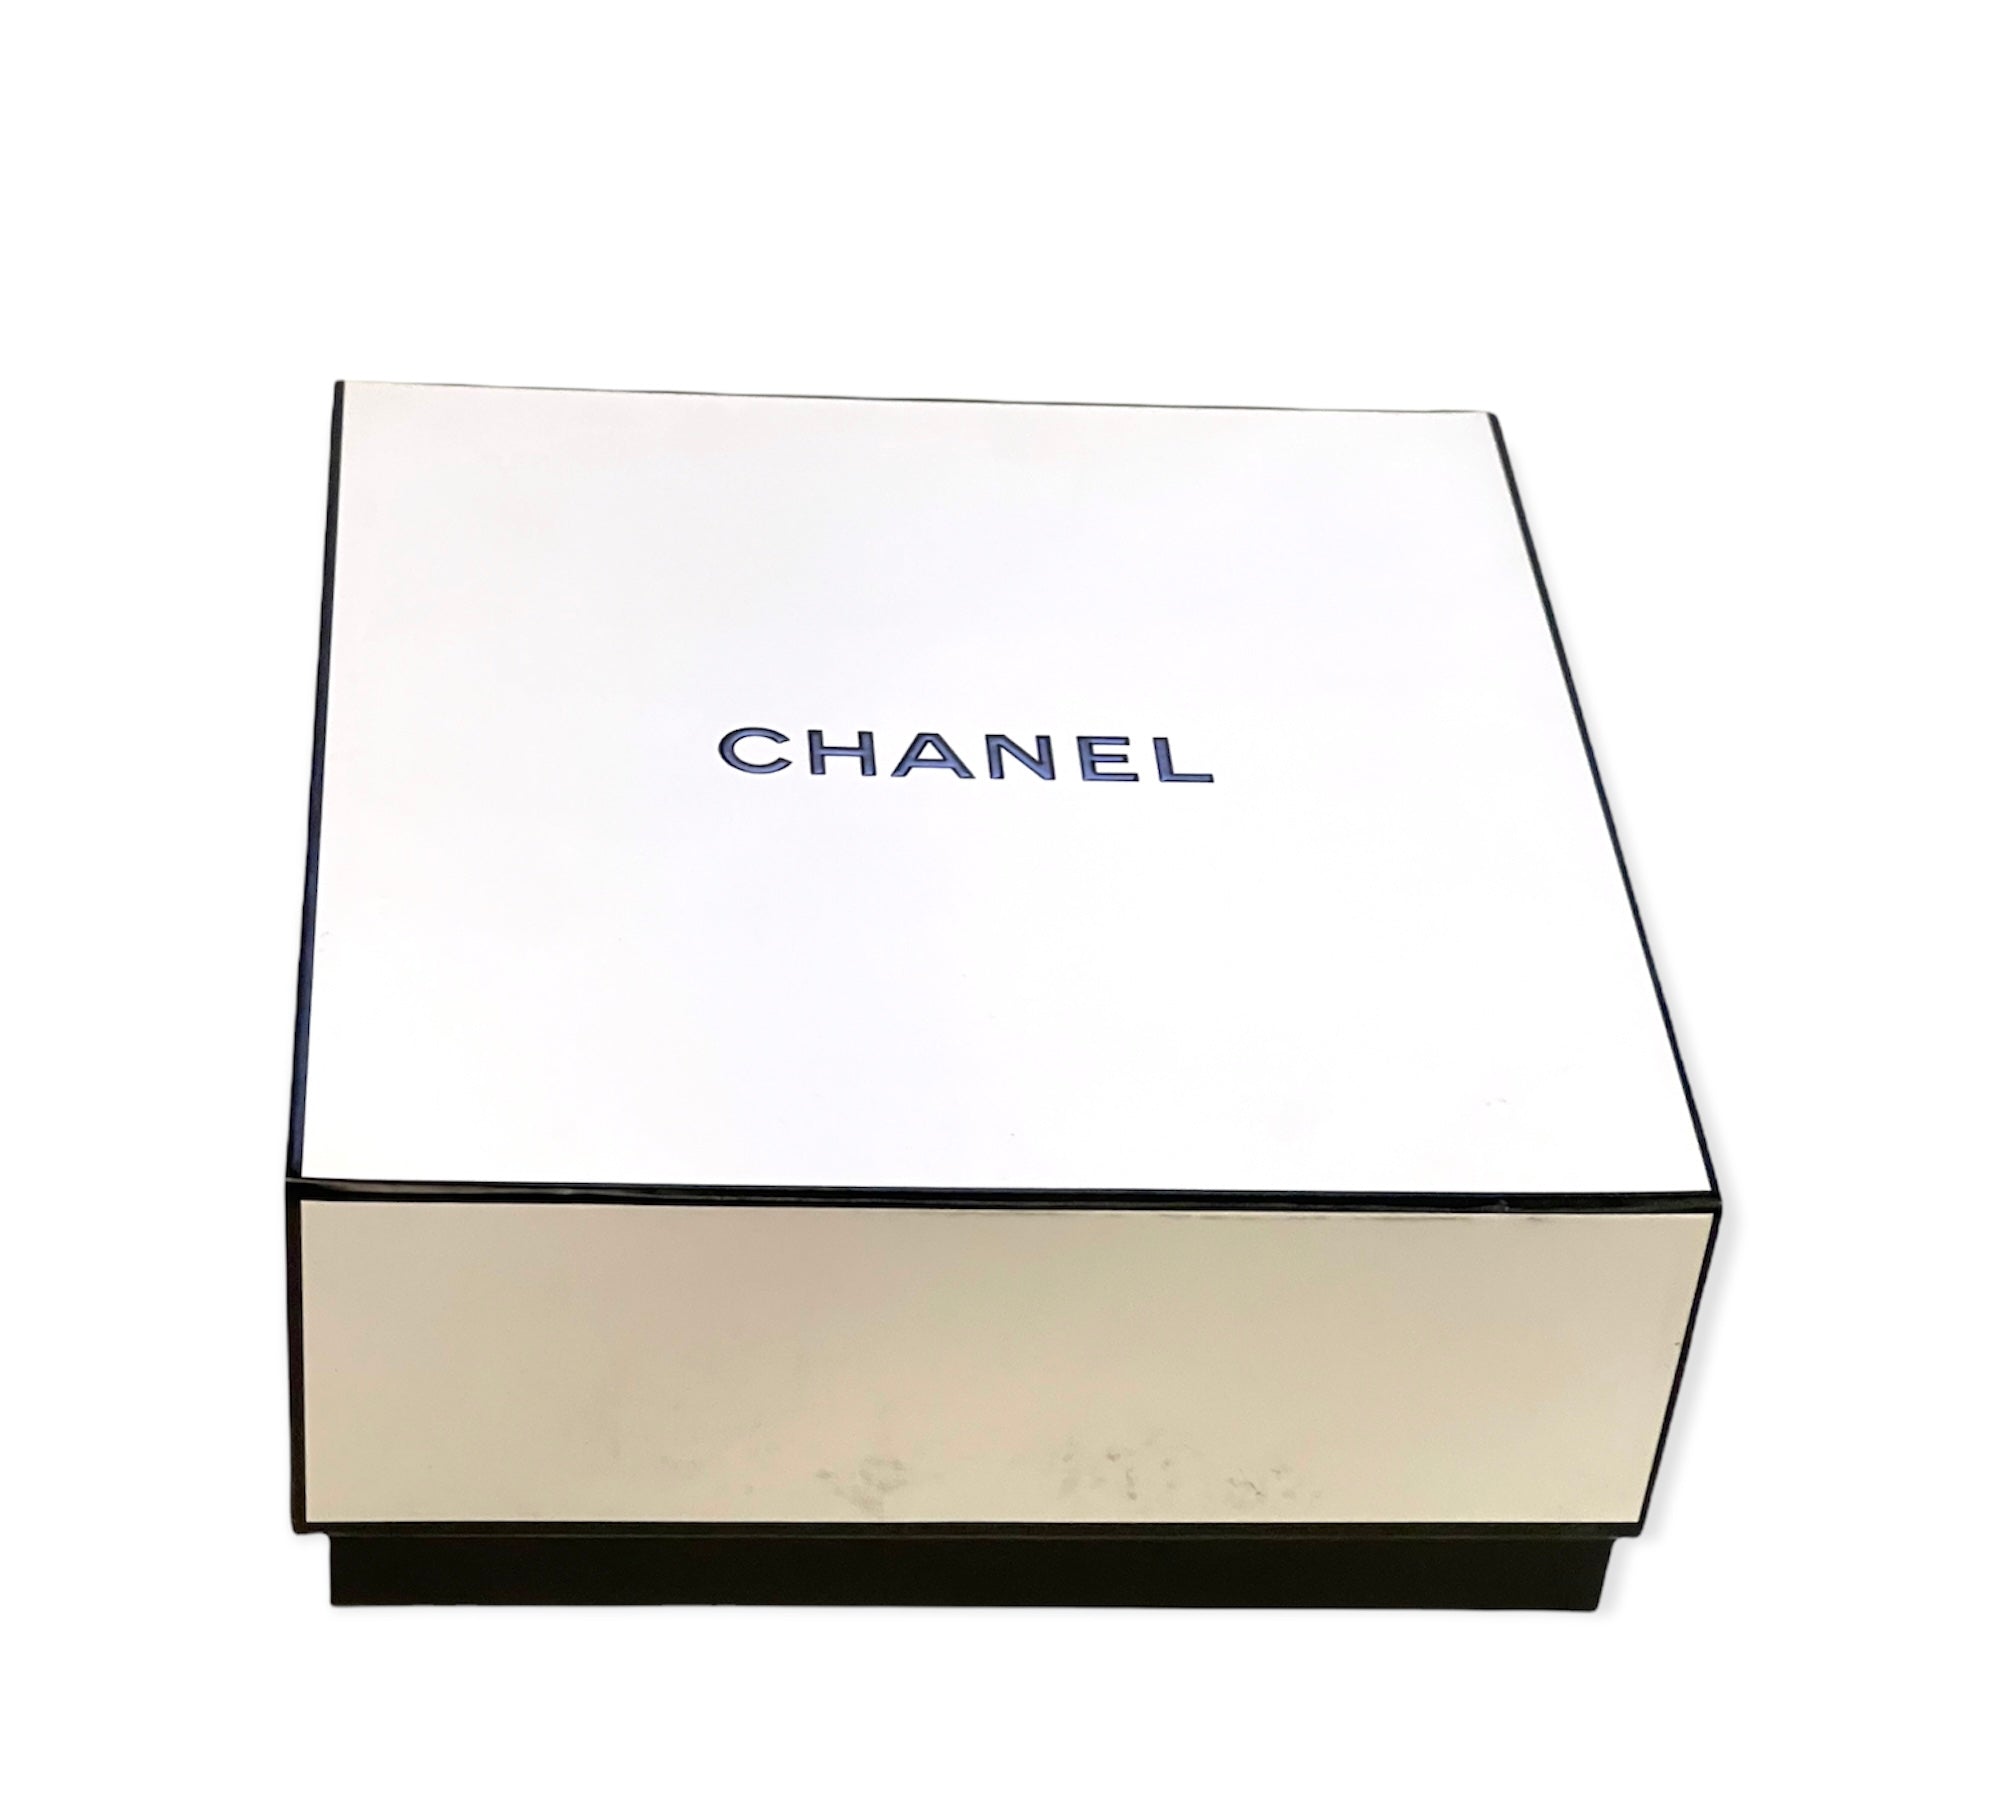 COCO MADEMOISELLE CHANEL L'eau Privee Eau Pour La Nuit 3pcs Gift Set –  always special perfumes & gifts